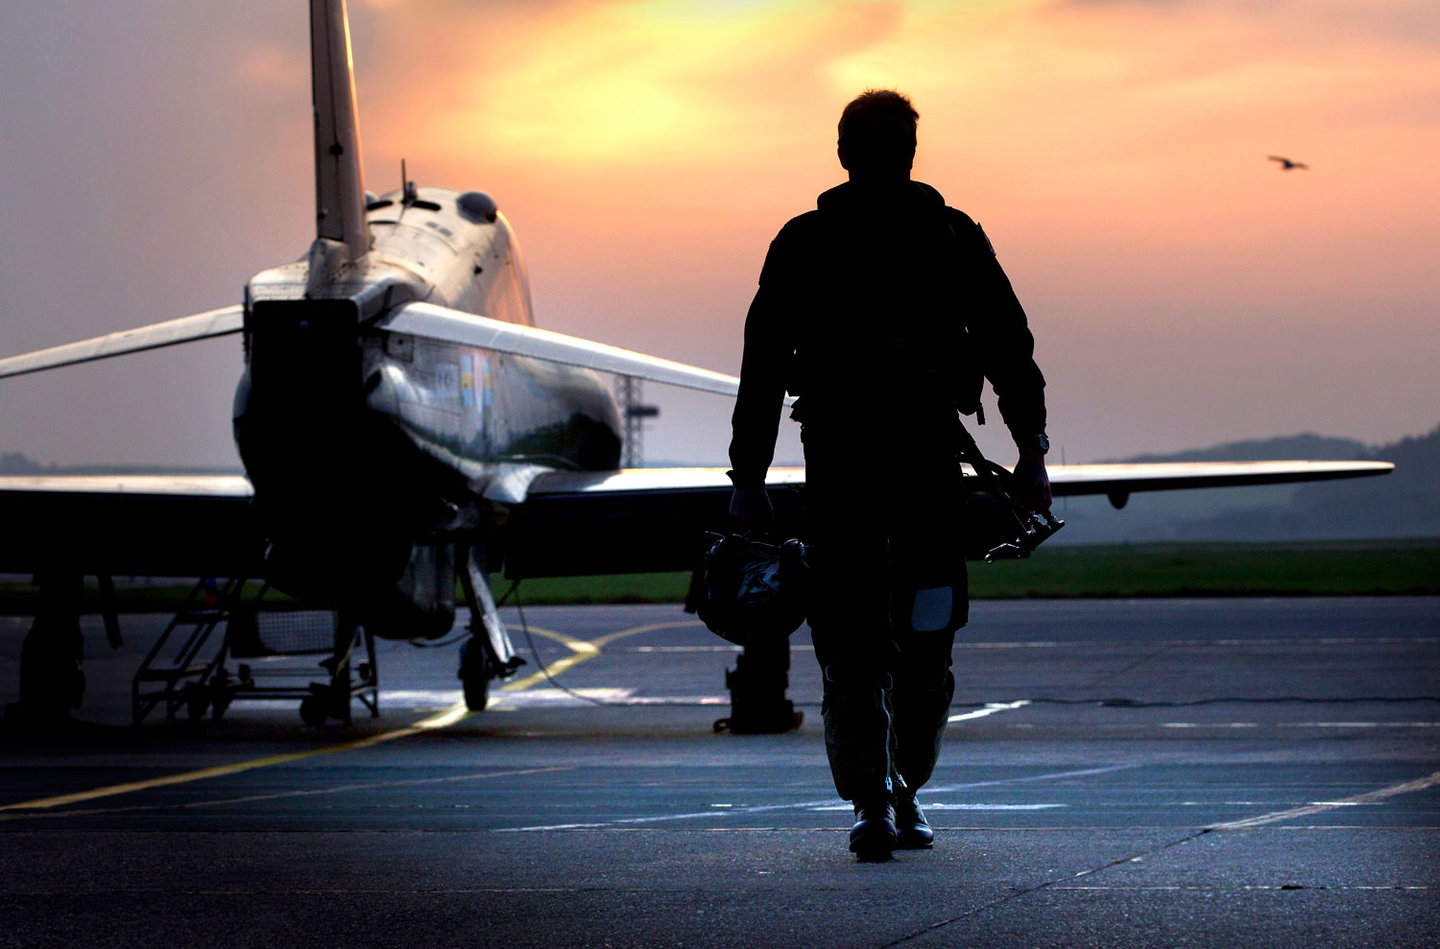 An RAF pilot approaches a Hawk training aircraft. 